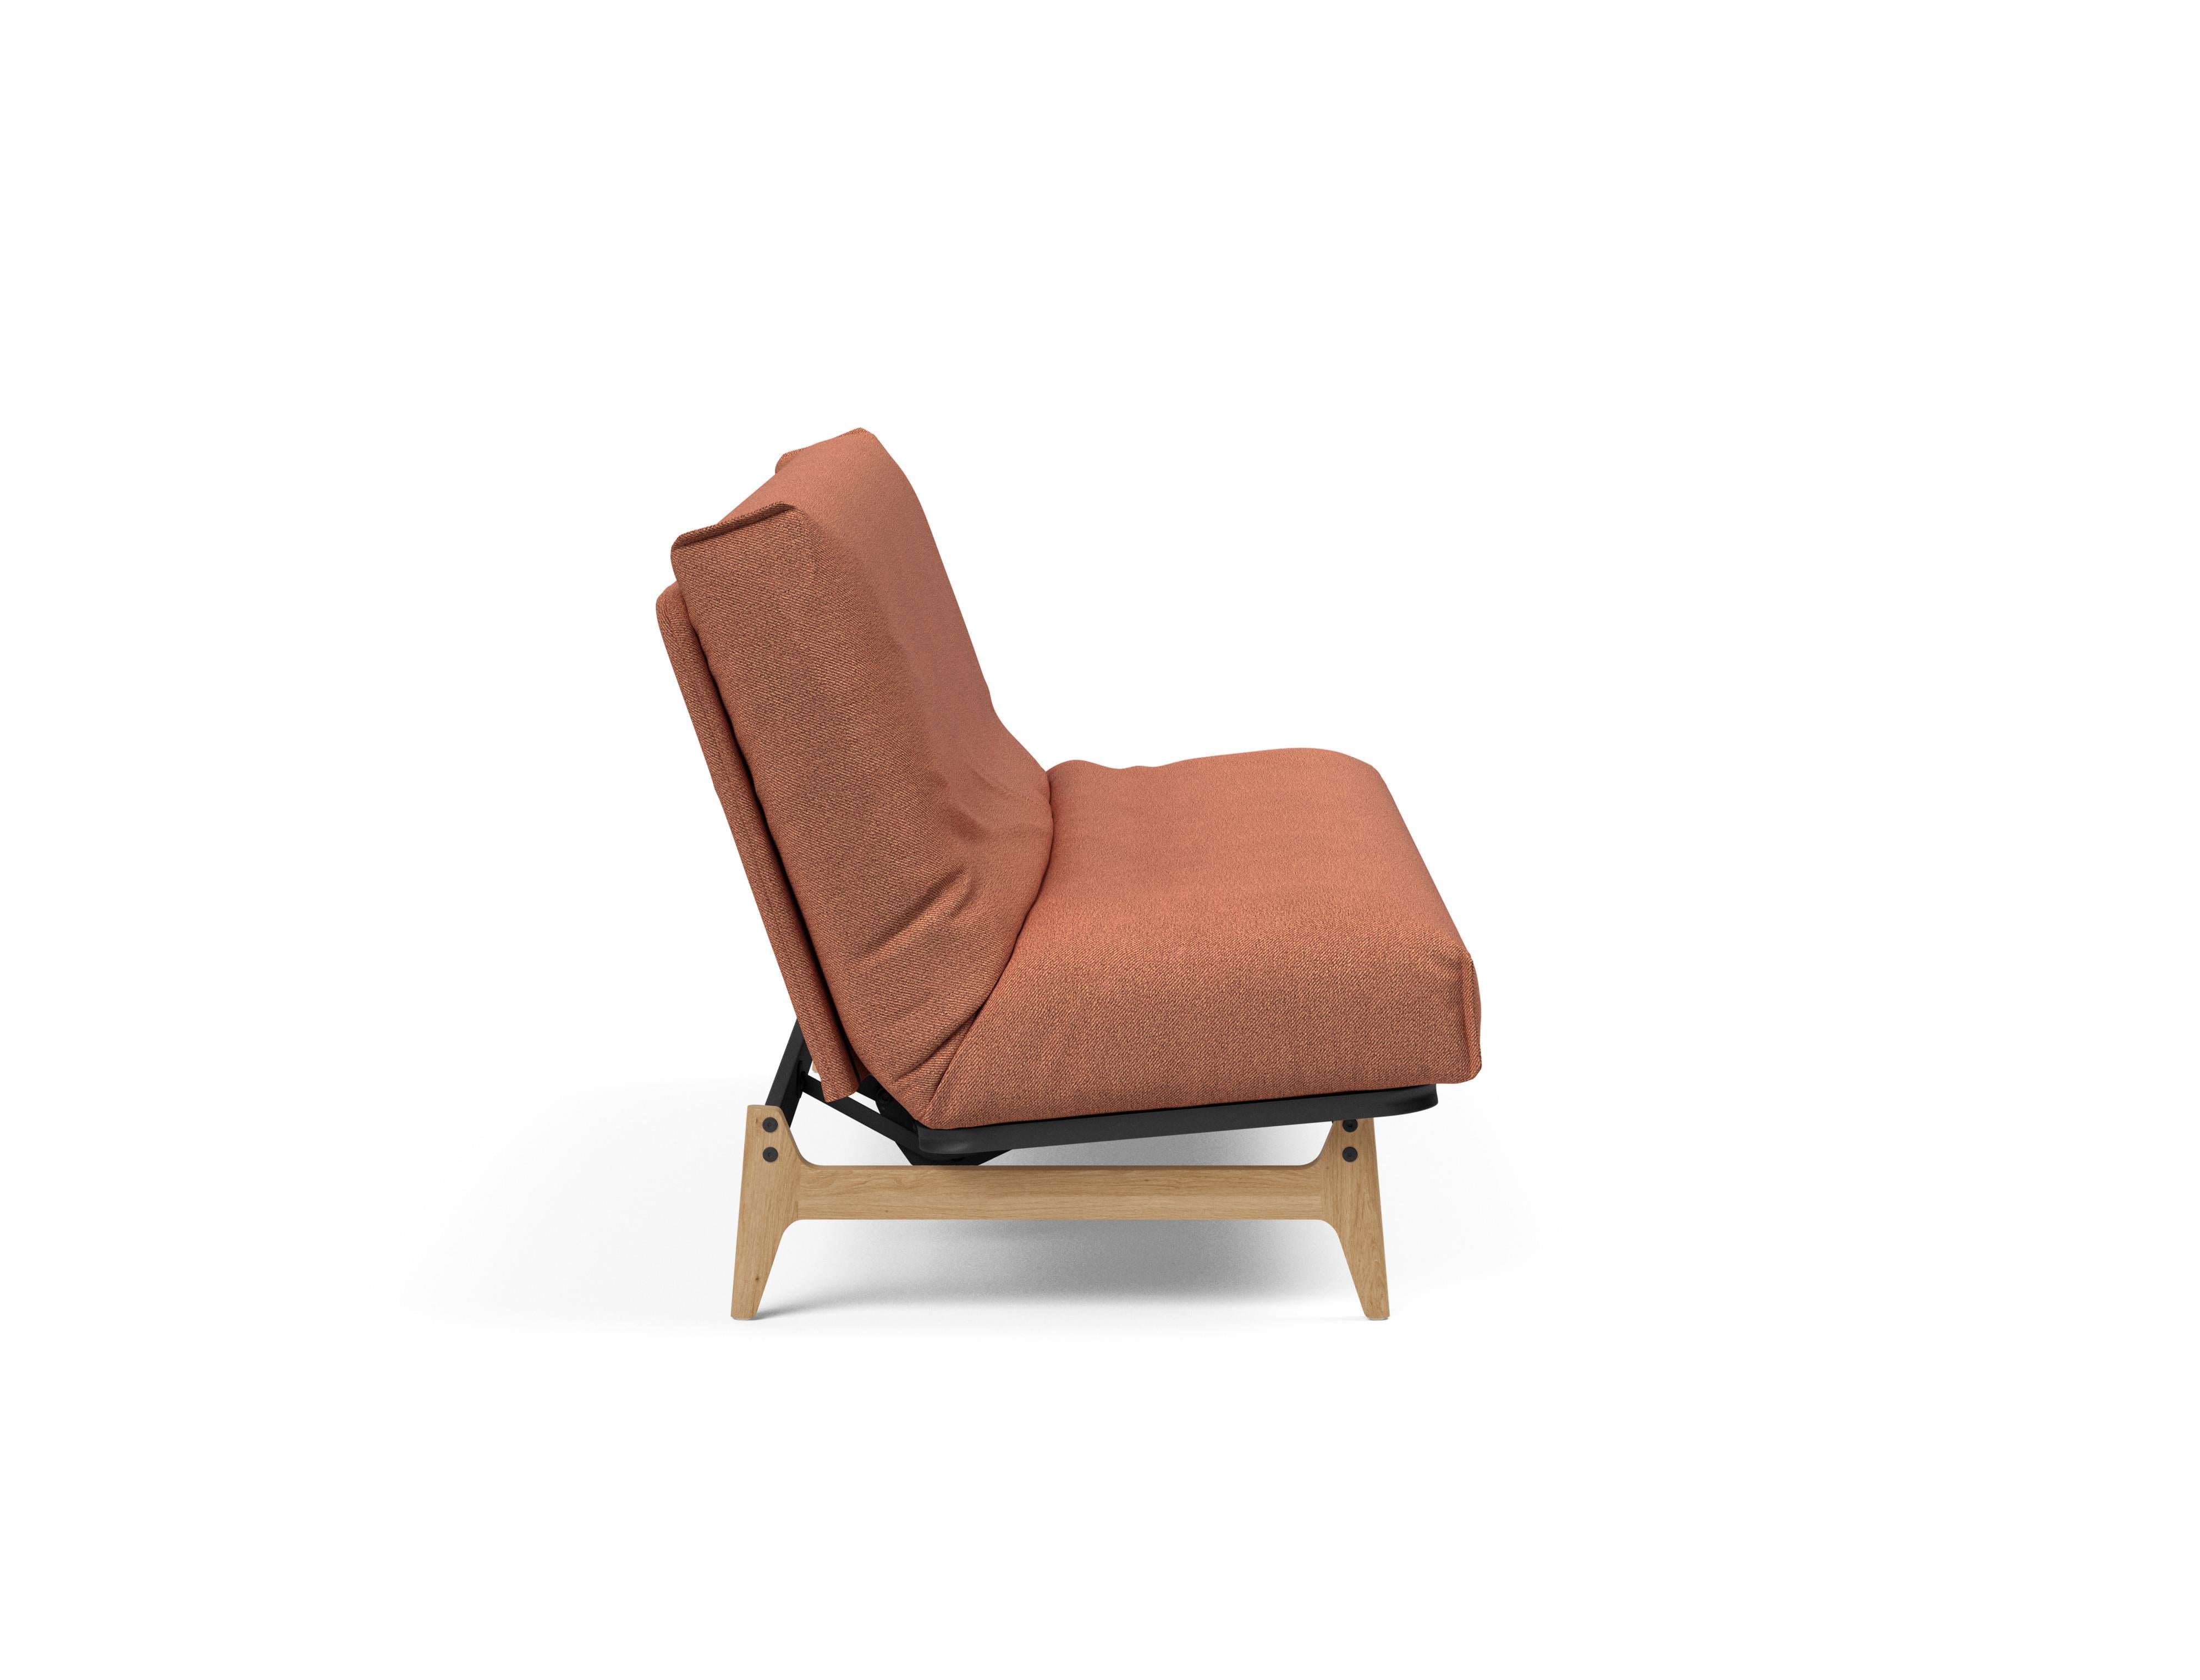 Aslak 140 Bettsofa Nordic Cover in Rust 301 präsentiert im Onlineshop von KAQTU Design AG. Bettsofa ist von Innovation Living